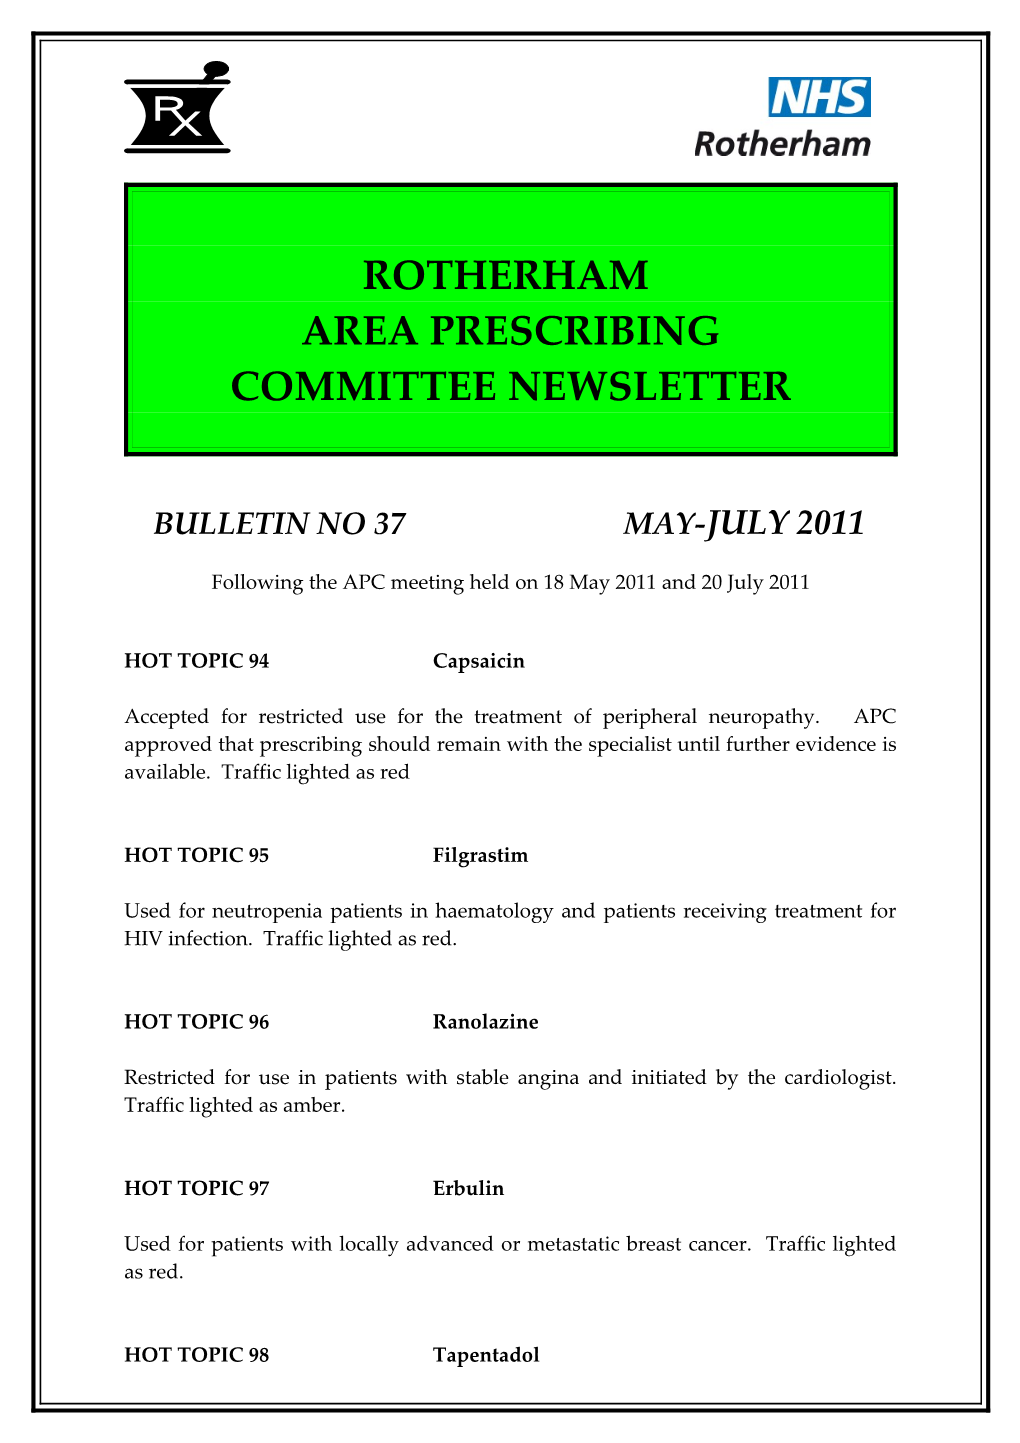 Area Prescribing Committee Newsletter